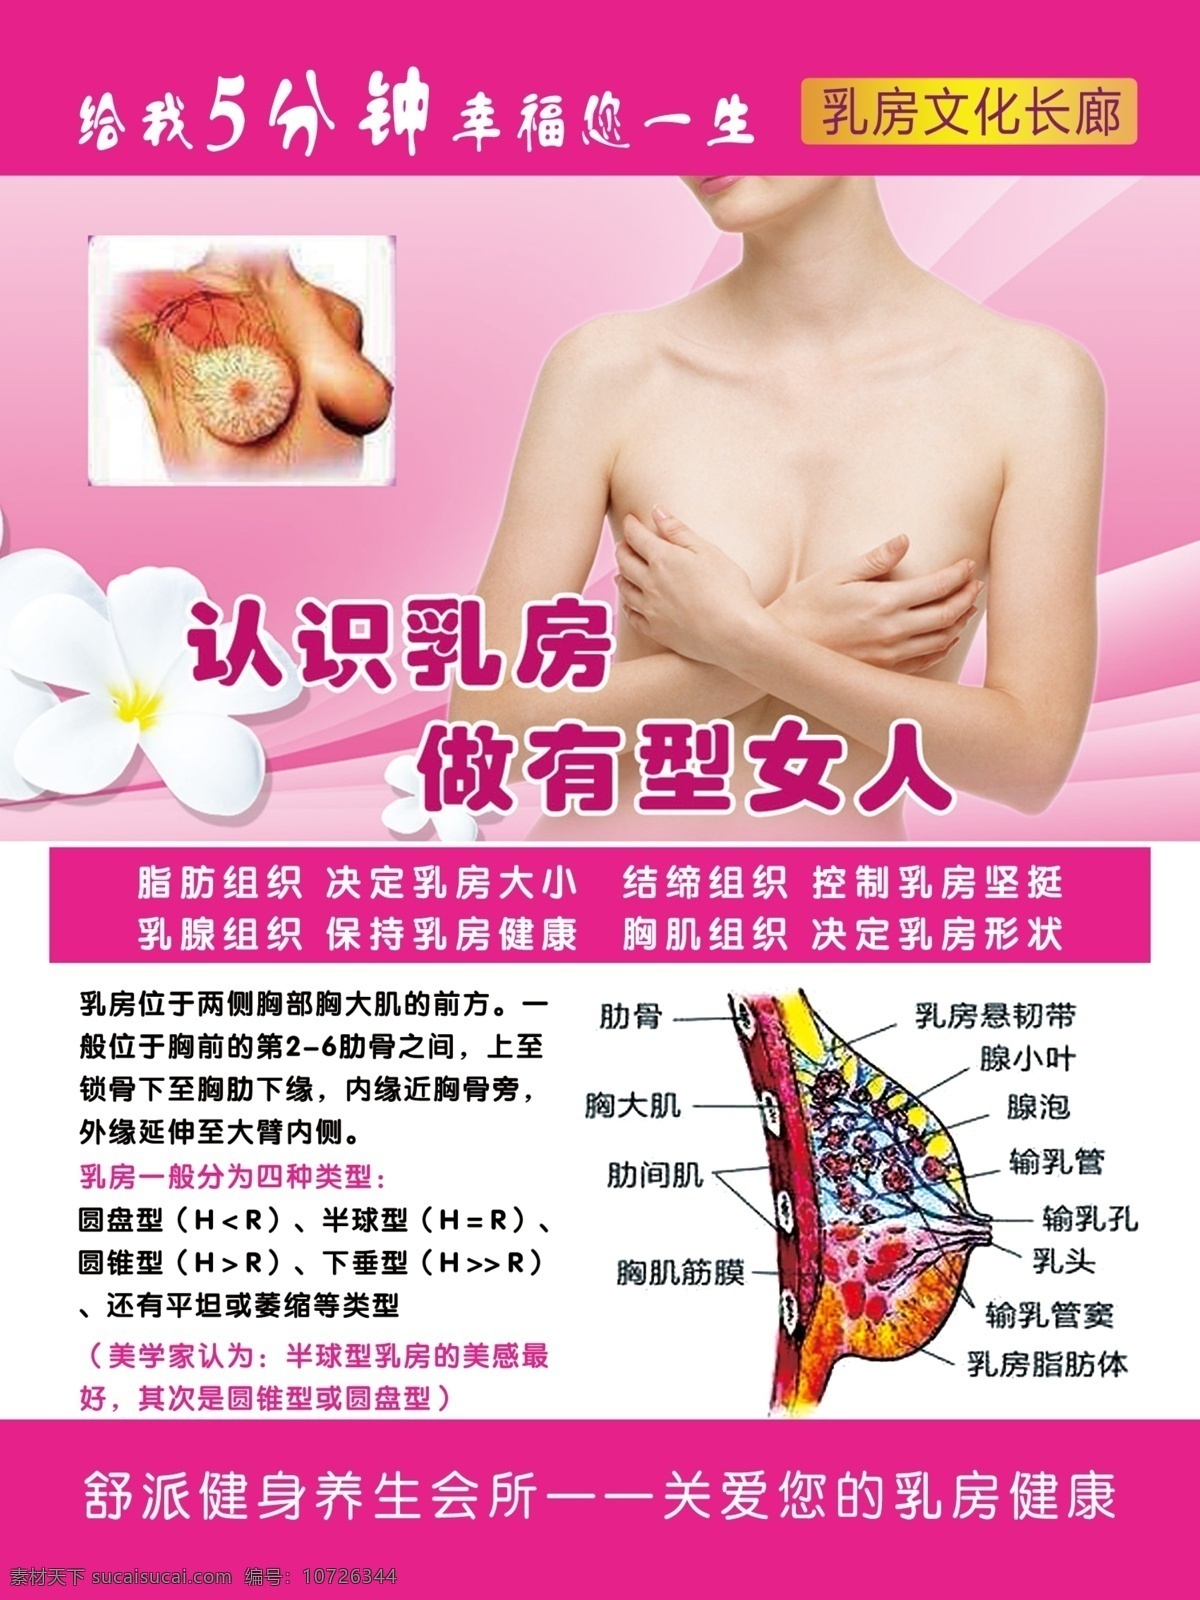 乳房健康展板 乳房 健康 海报 展板 乳房健康 乳房海报展板 认识乳房 美容海报展板 养生海报展板